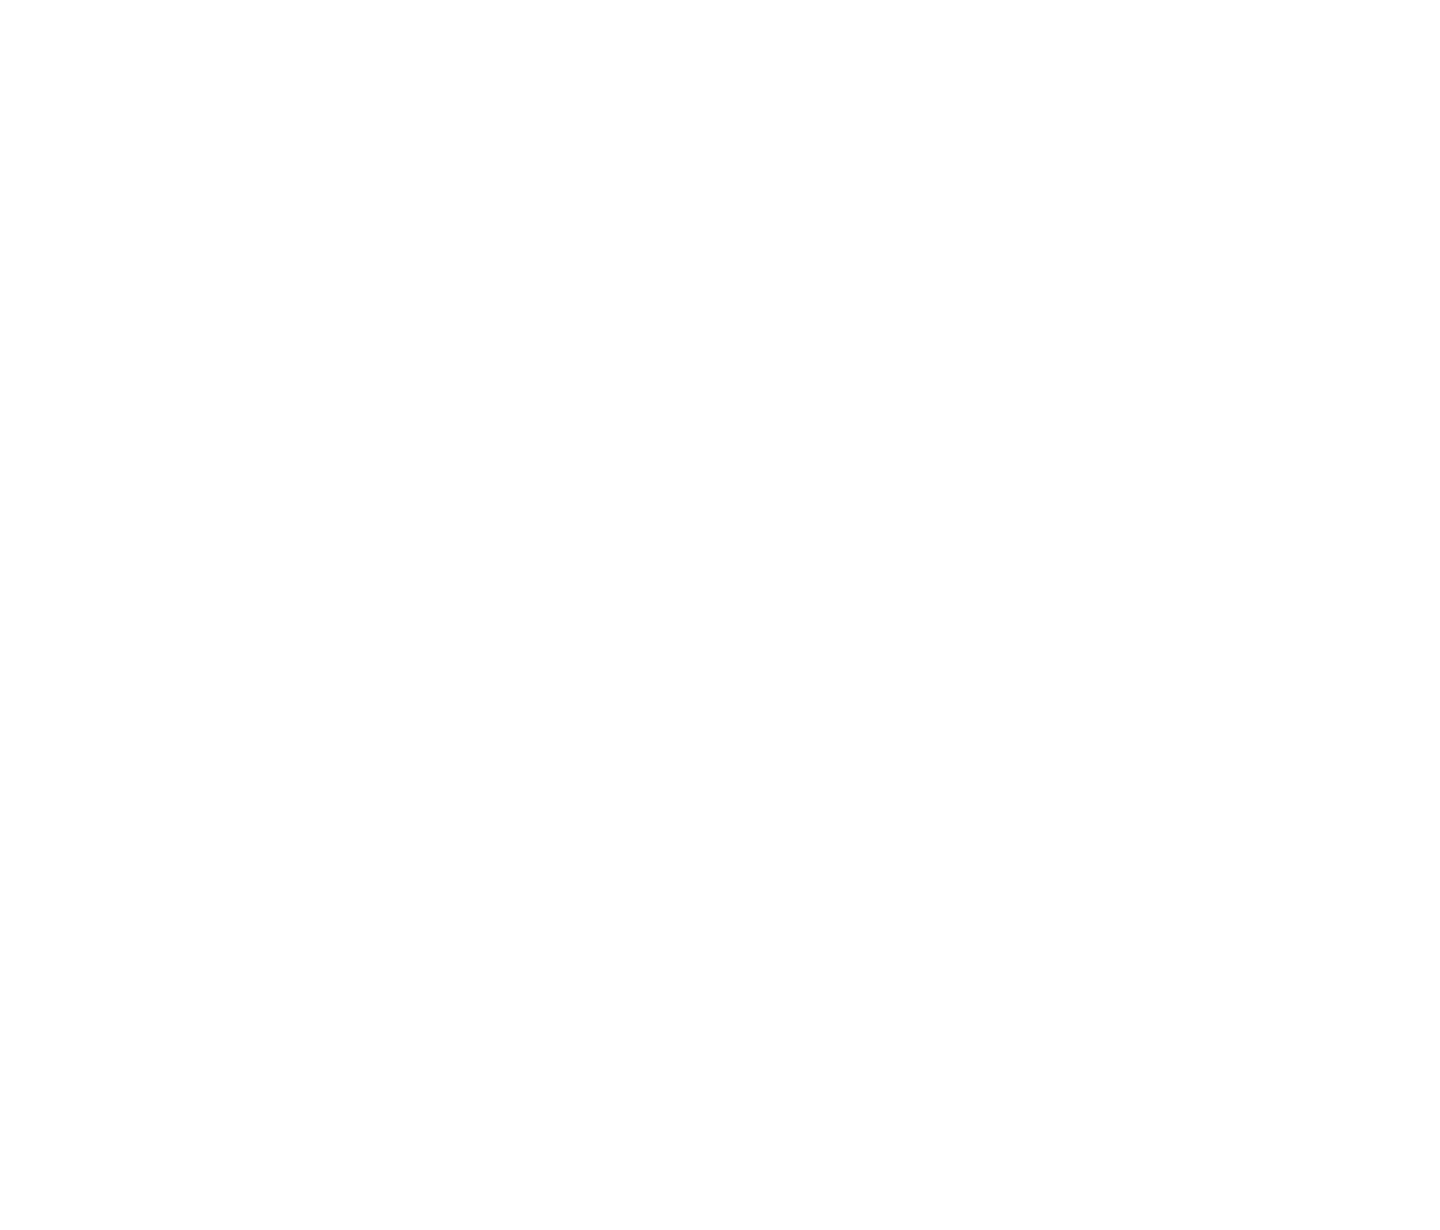 Calgary Freeriderz